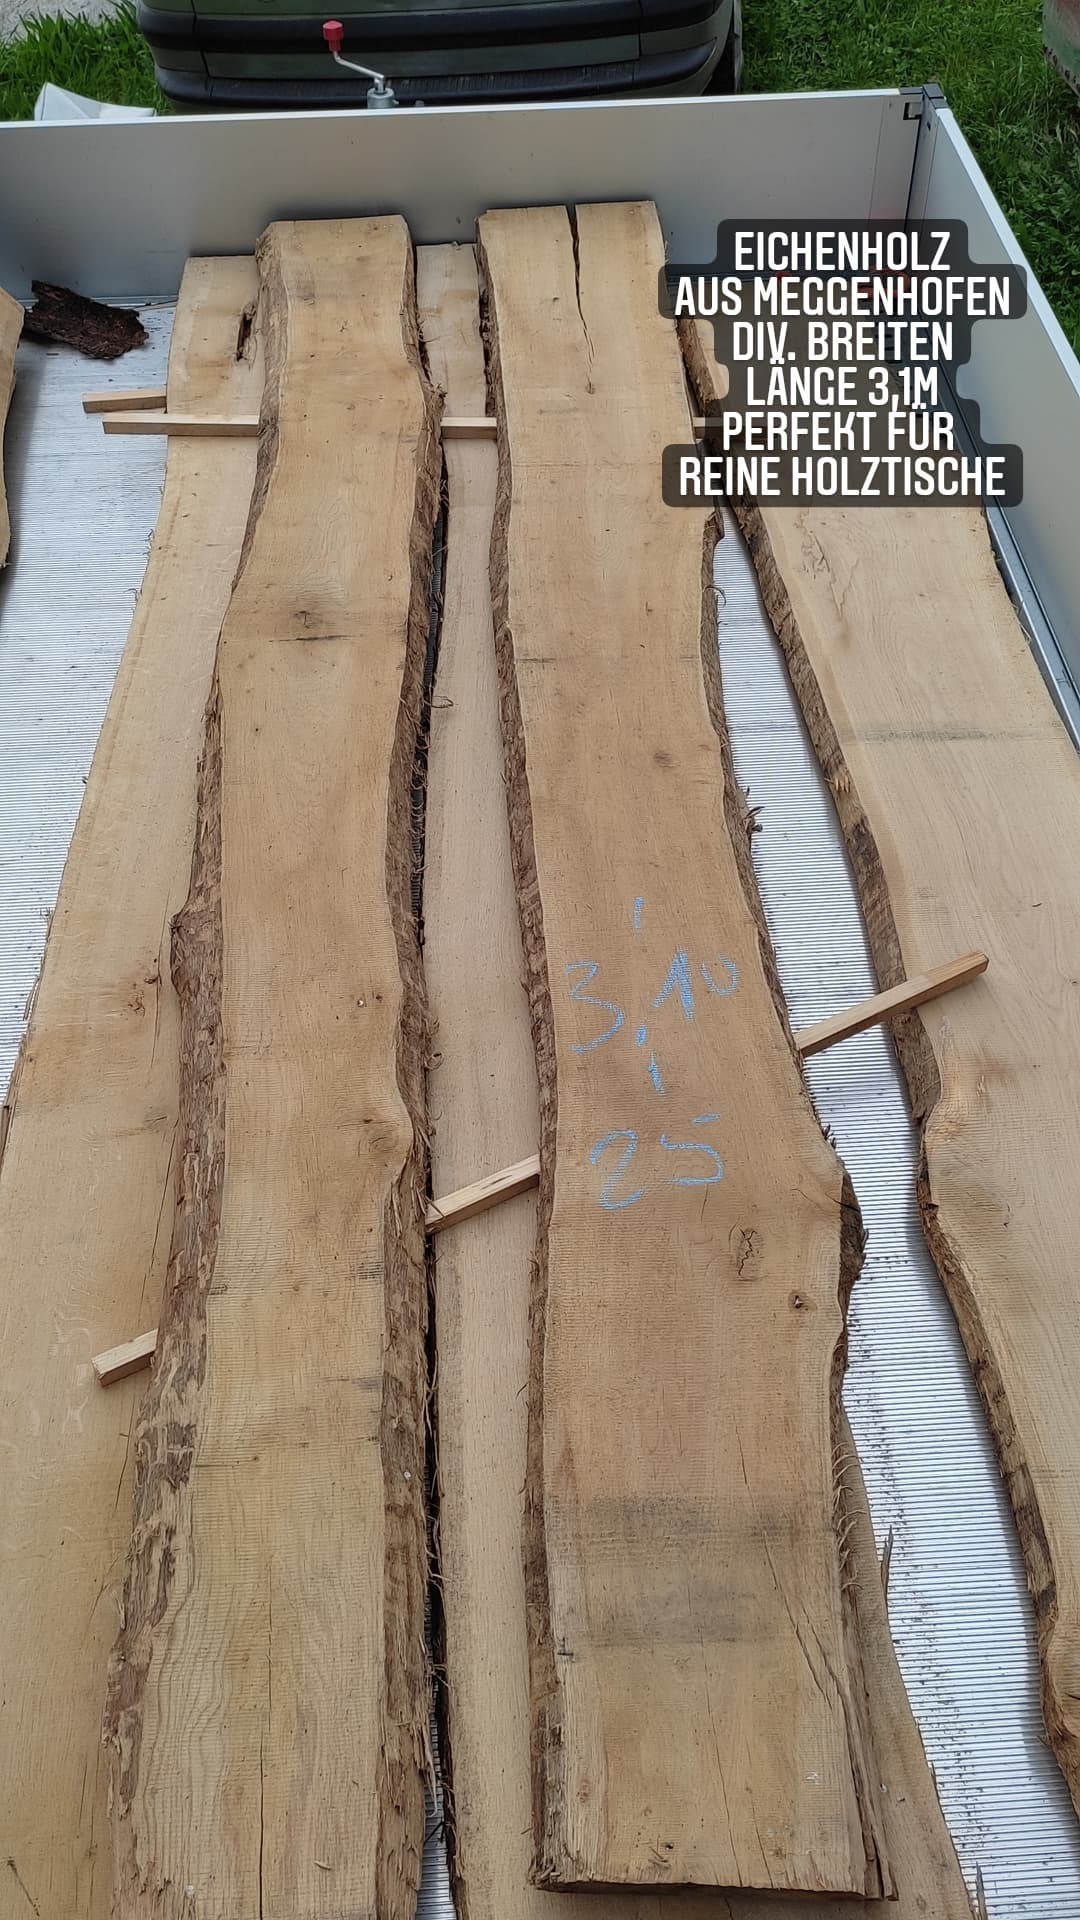 Tischplattenrohling Couchtisch Eichenholz aus Meggenhofen